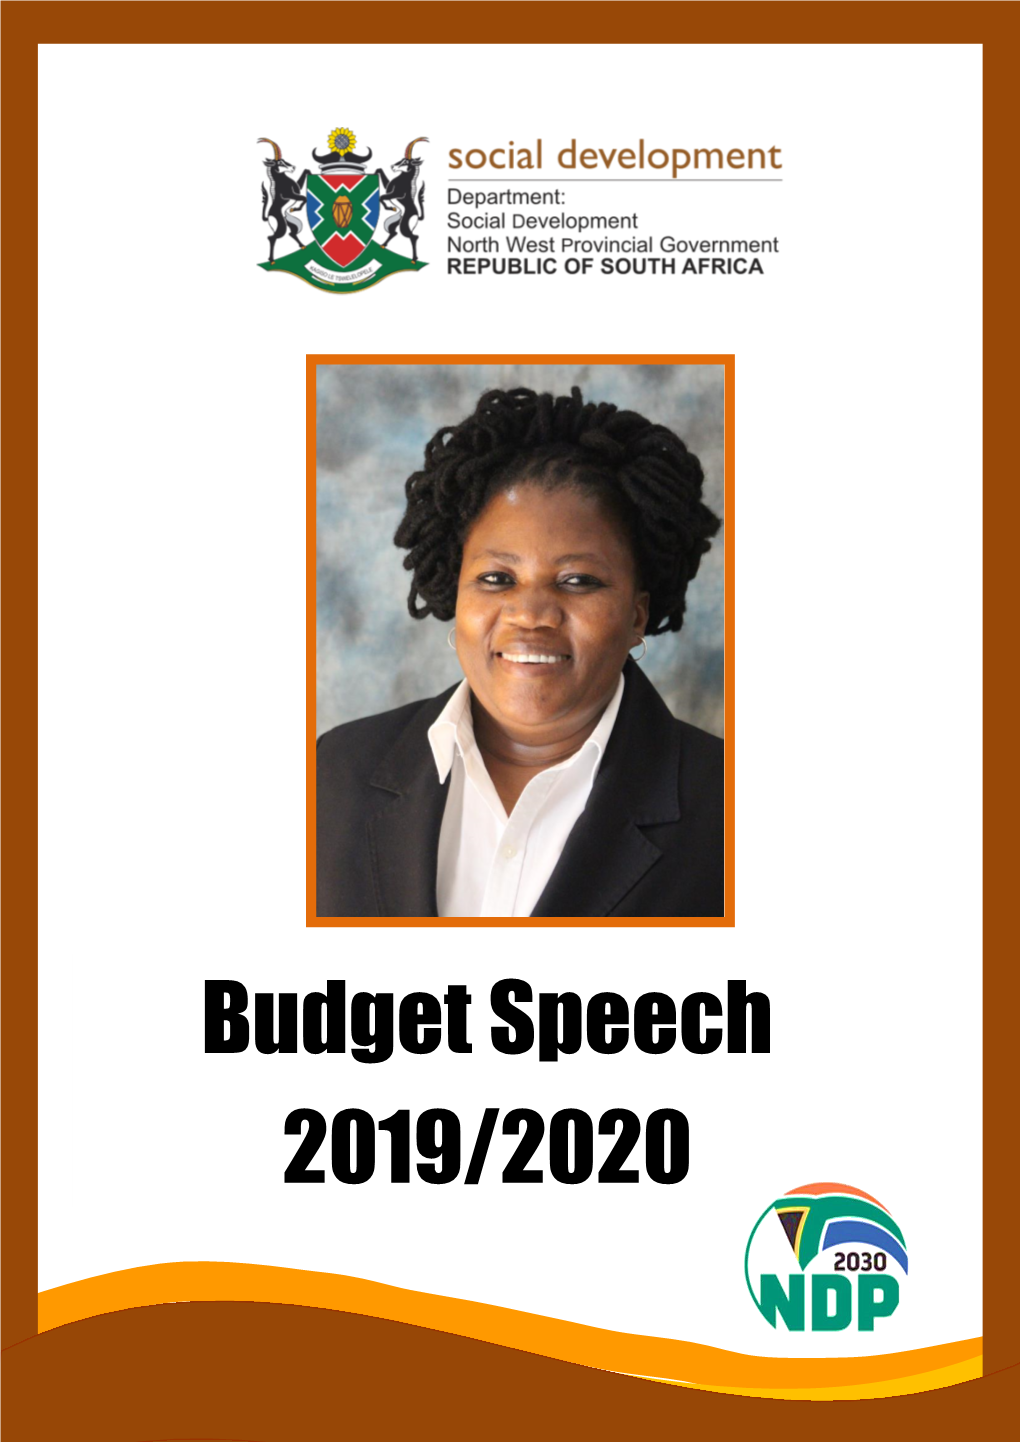 Budget Speech 2019/2020